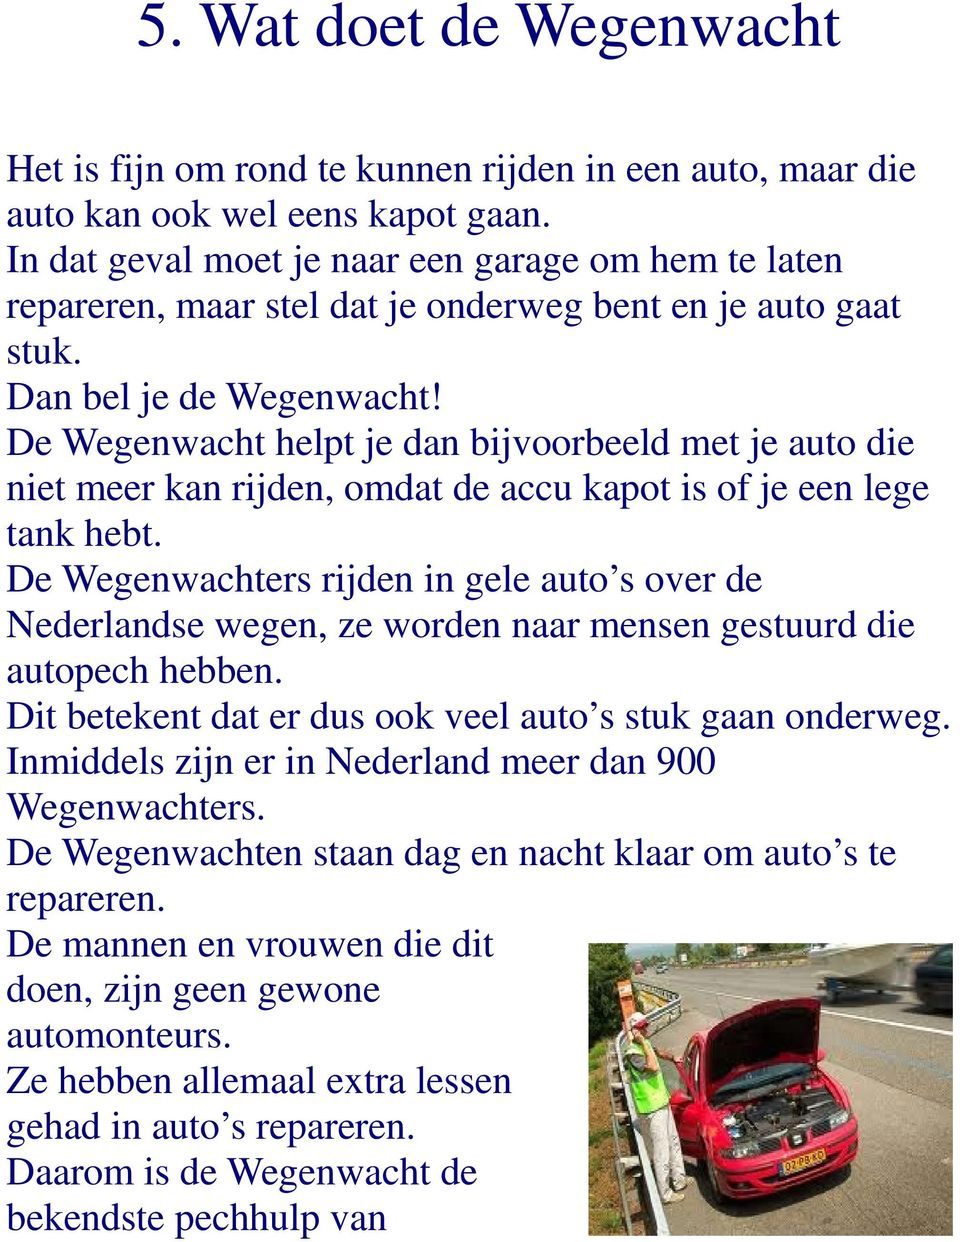 De Wegenwacht helpt je dan bijvoorbeeld met je auto die niet meer kan rijden, omdat de accu kapot is of je een lege tank hebt.